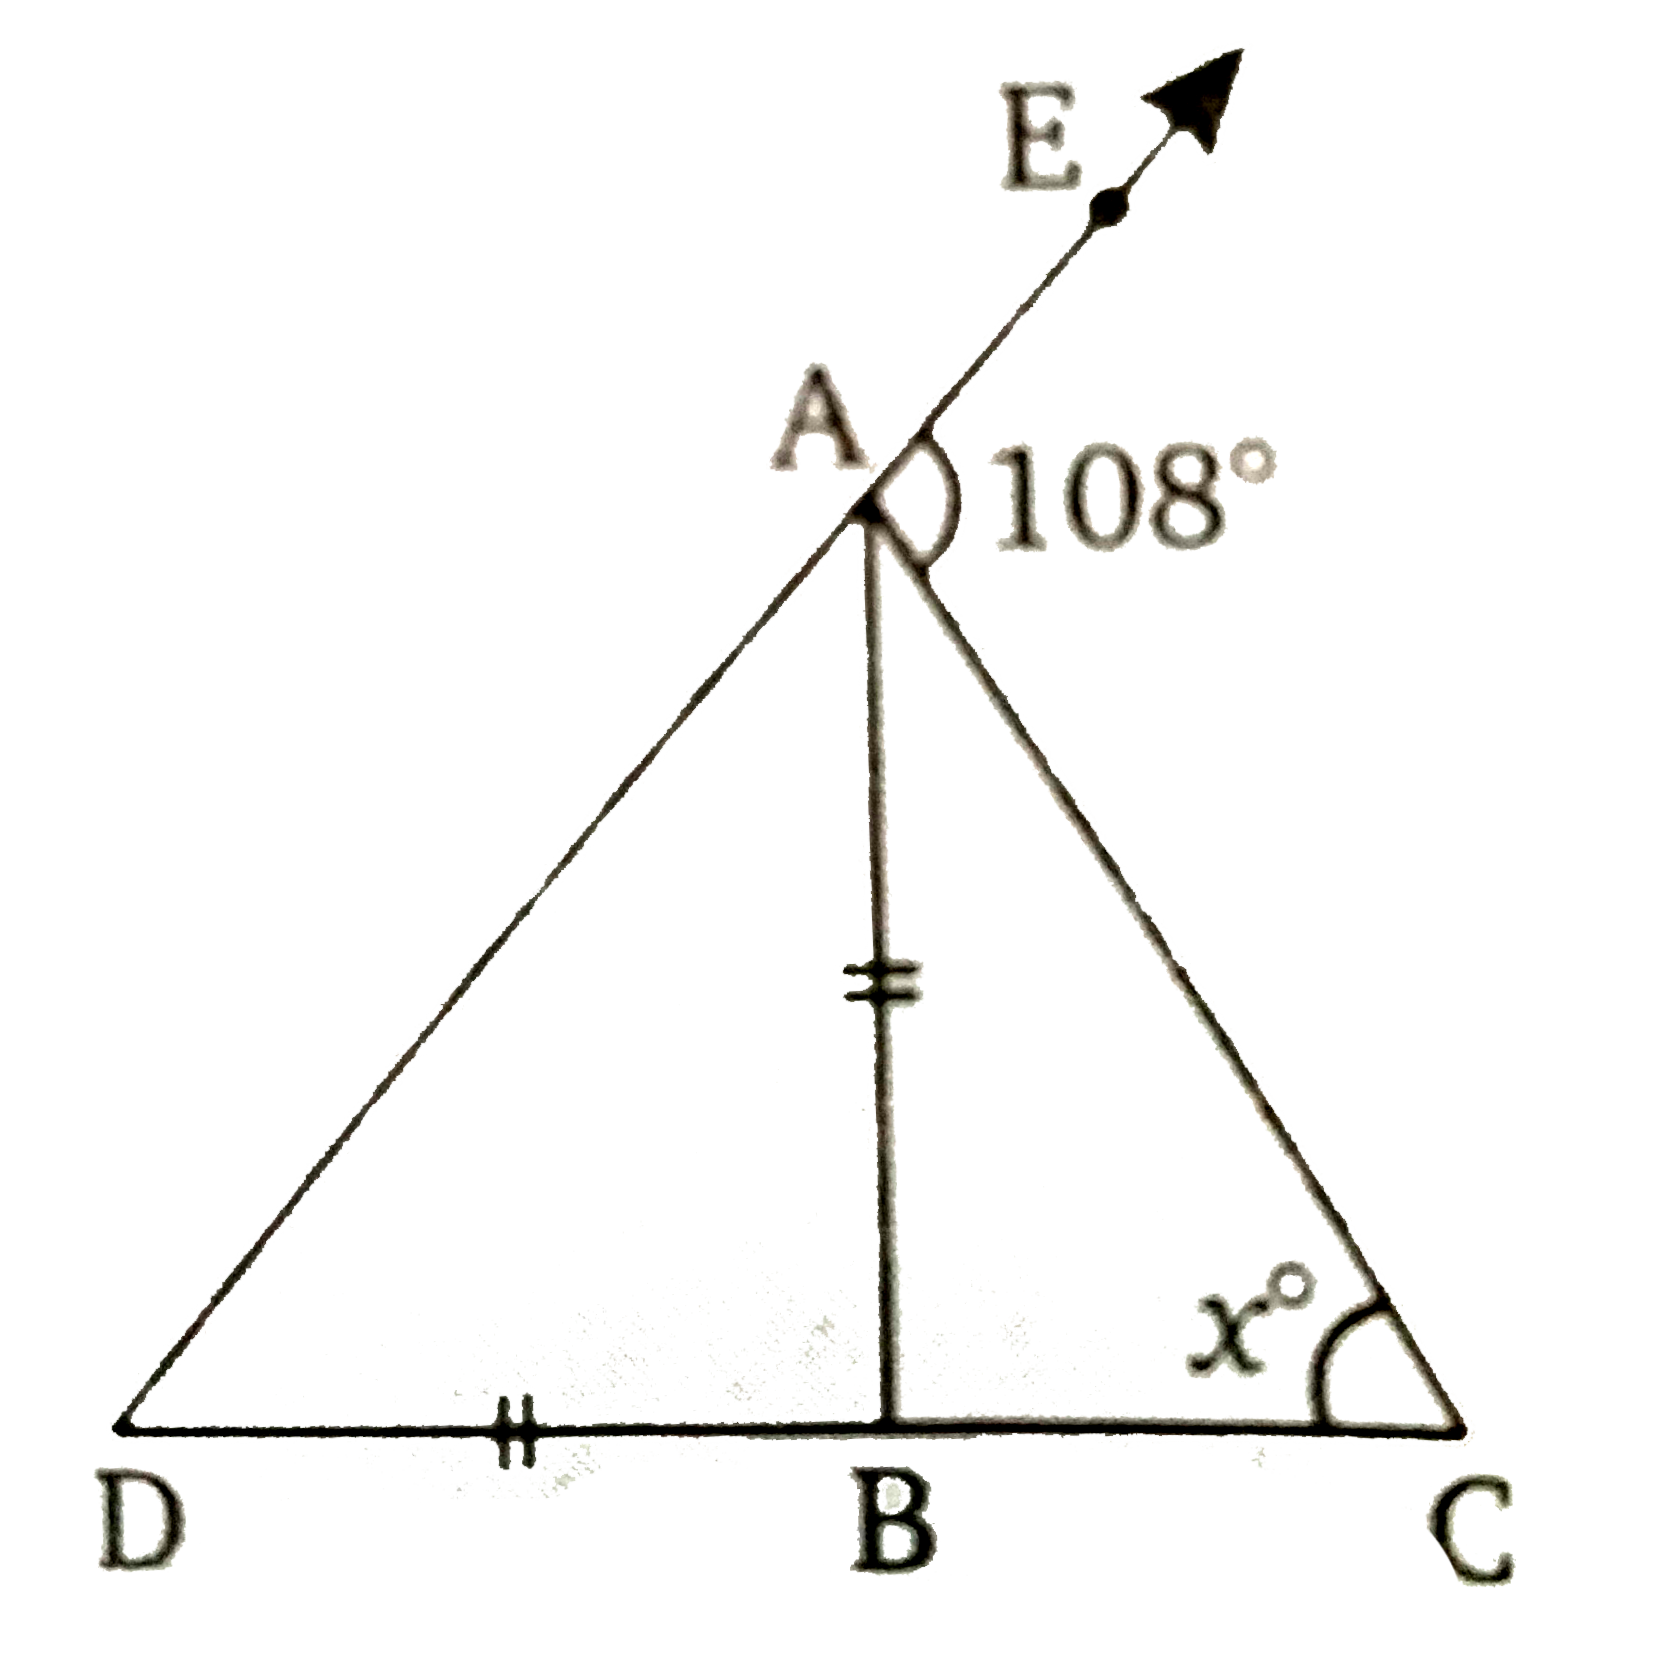 चित्र में,  AB, /DAC को  1:3के अनुपात में विभाजित करता है और  AB + DB , x का मान निकालिये ।